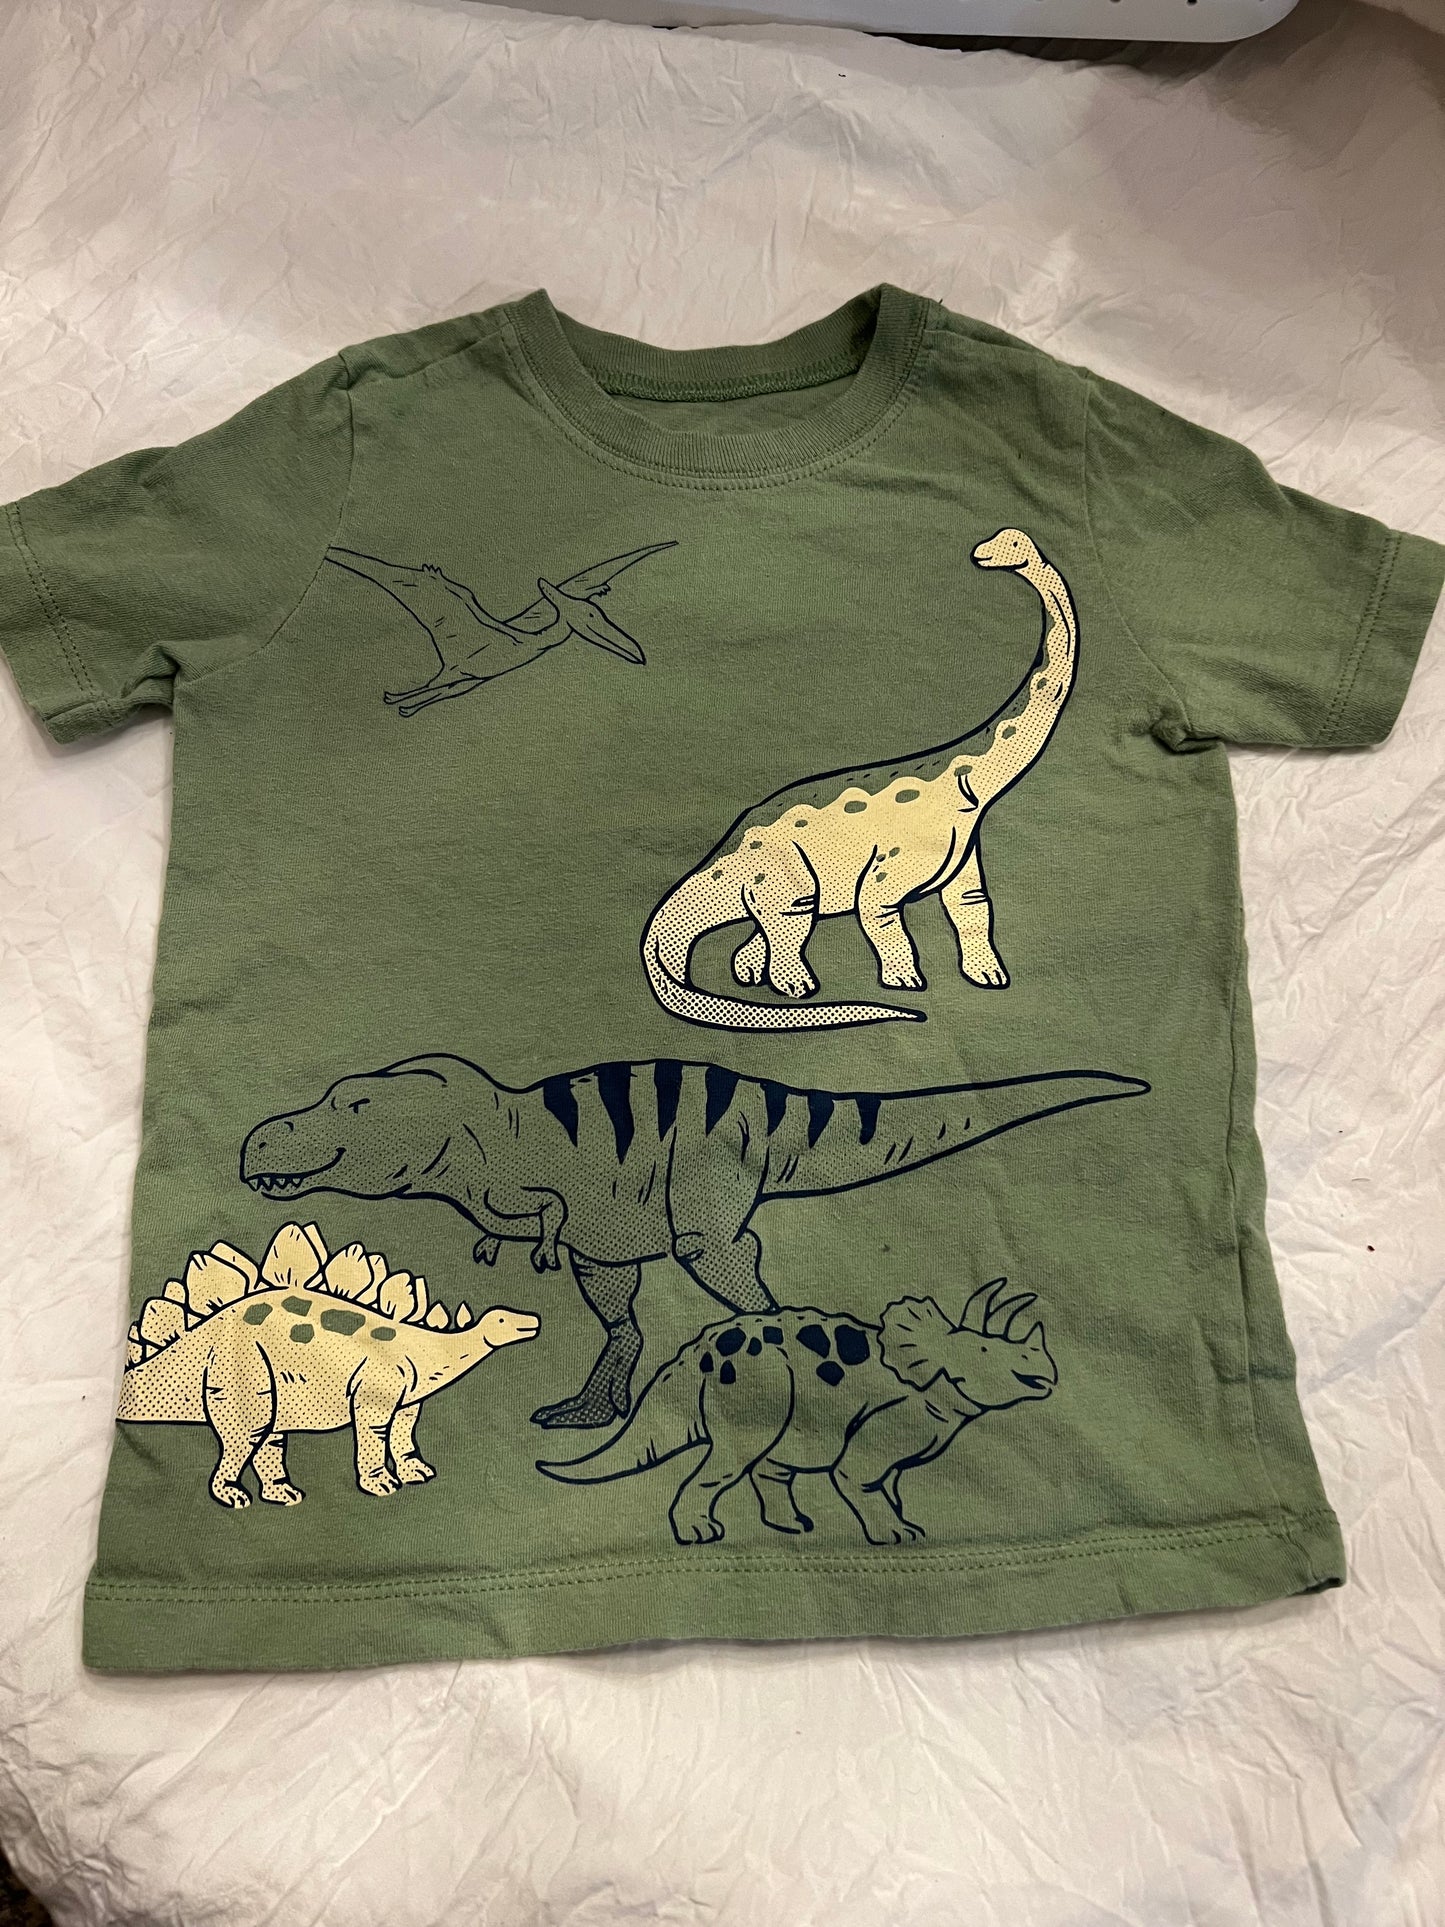 Carters Boy 2T Green Dinosaur shirt